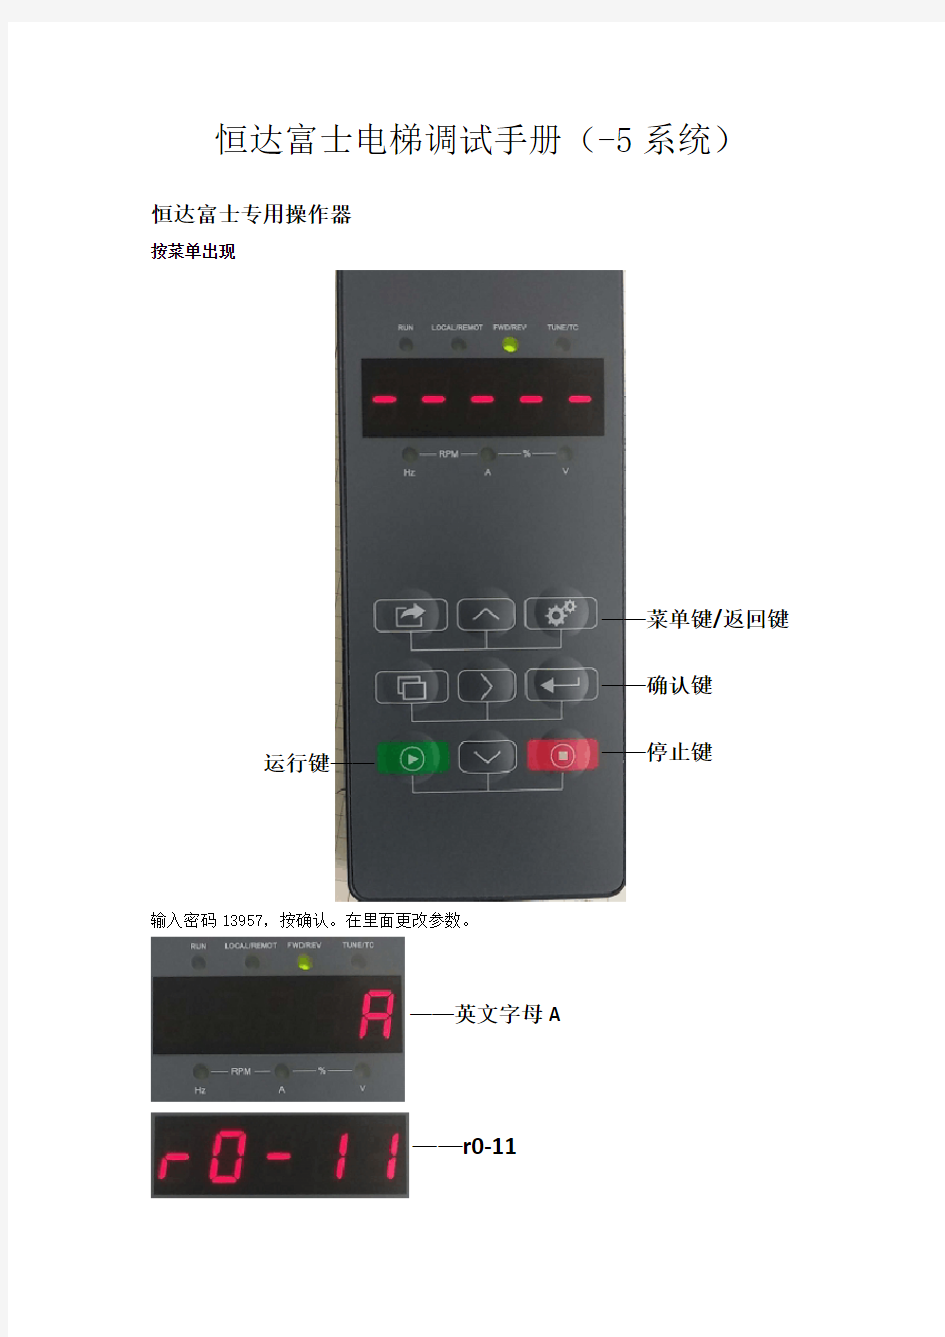 恒达富士电梯调试手册(-5 系统)